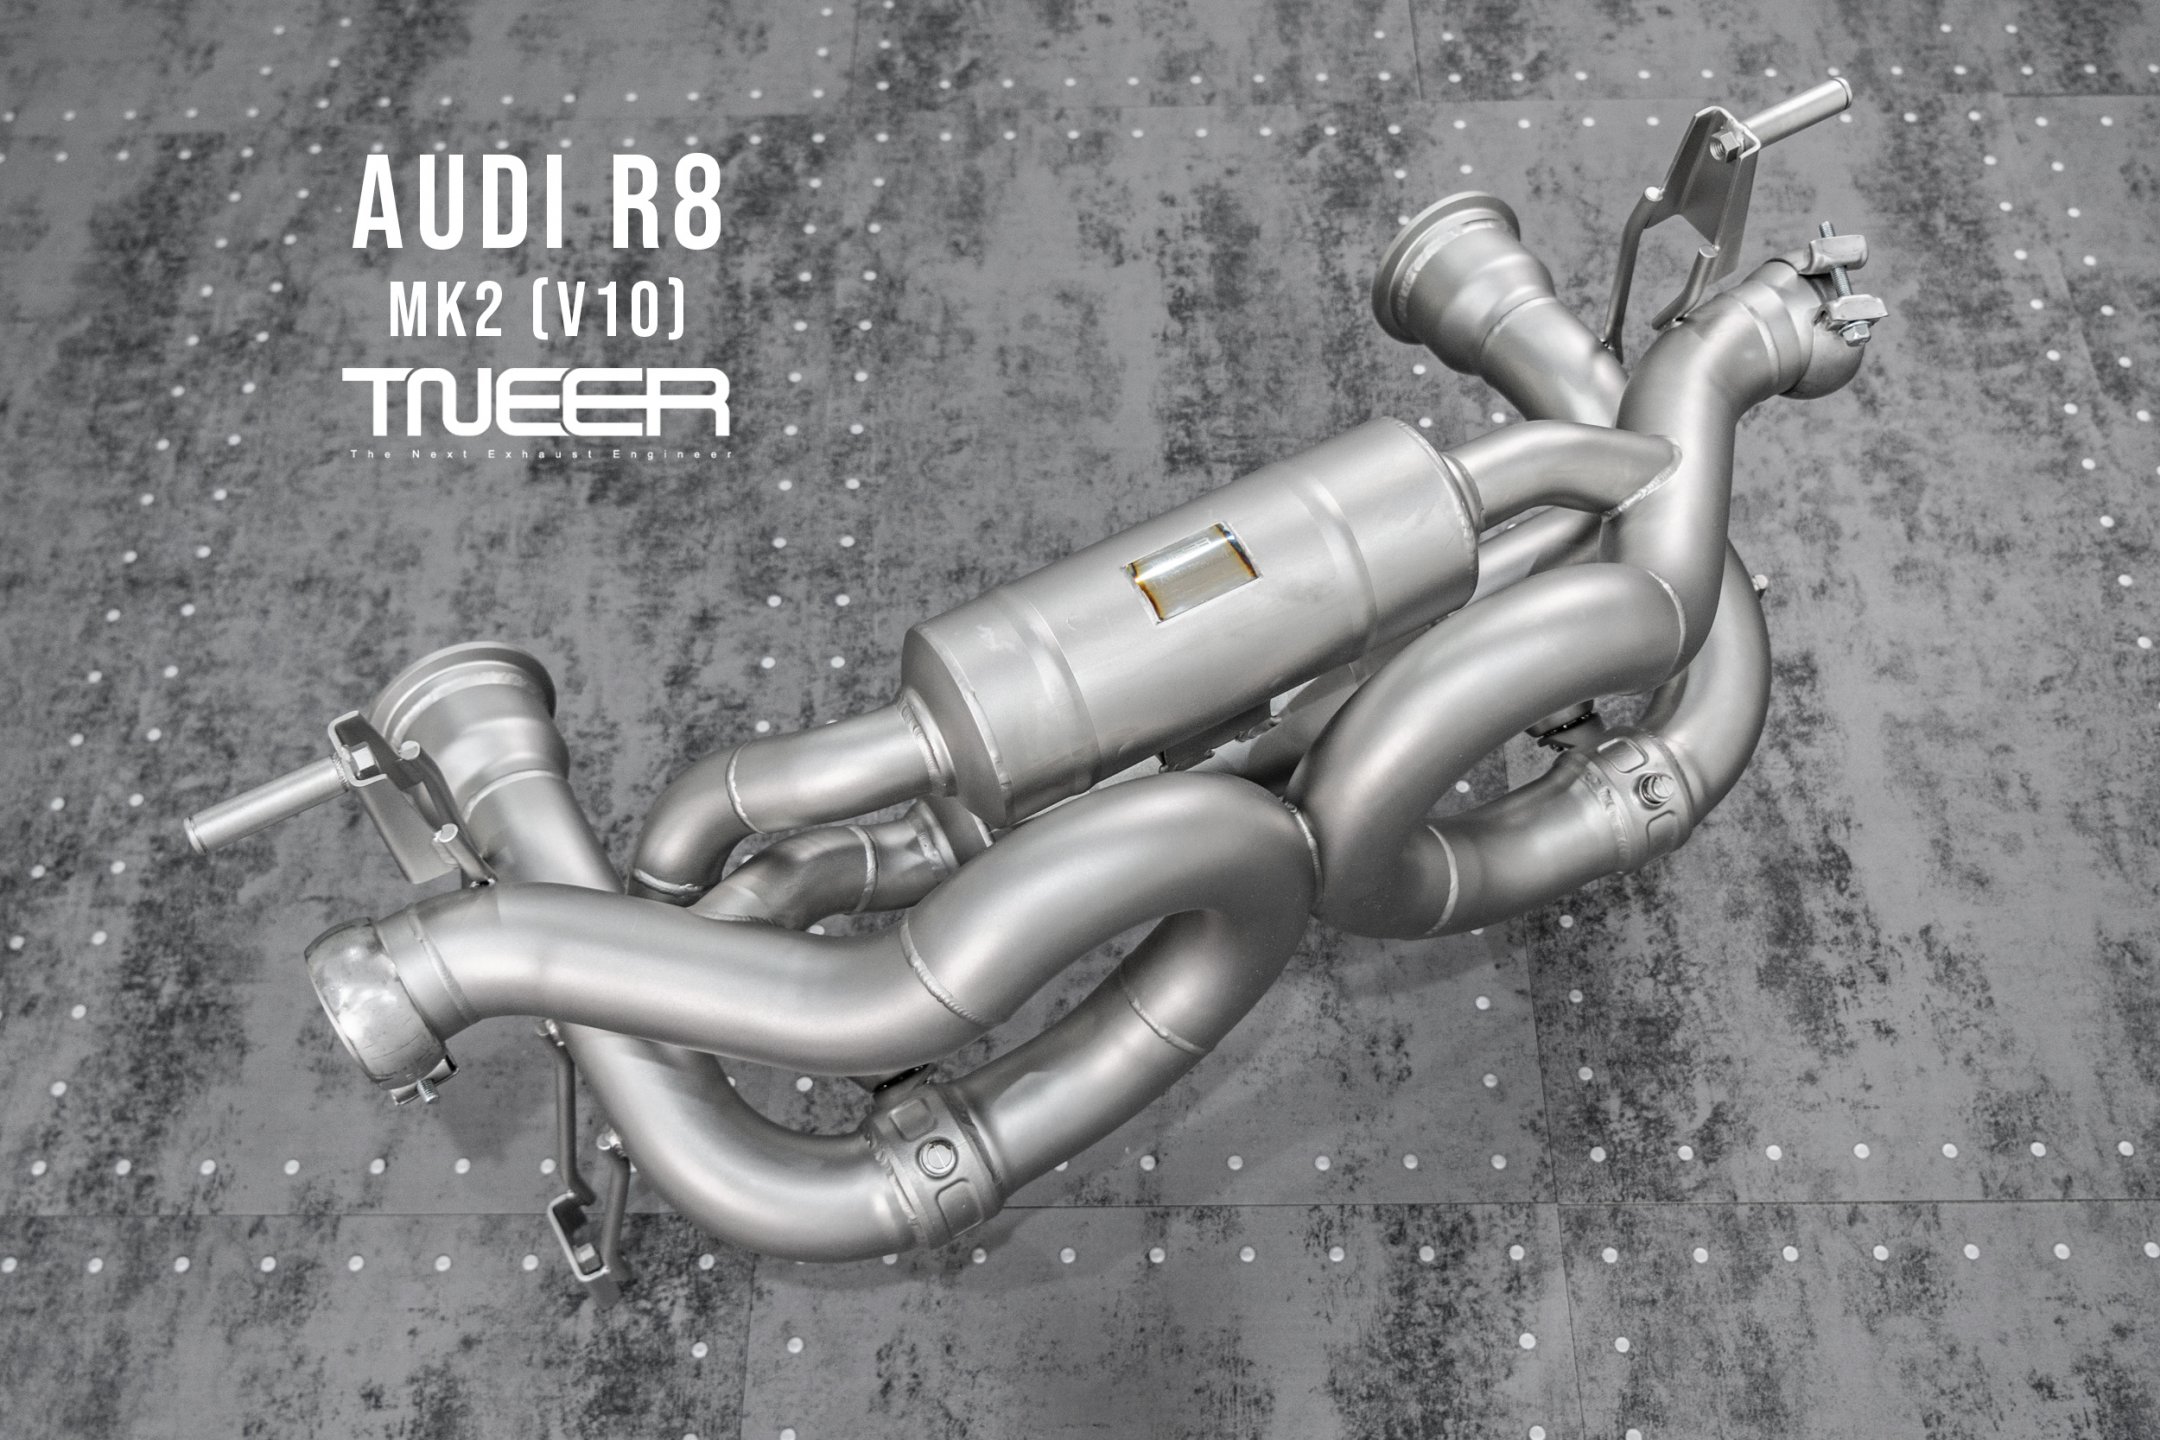 AUDI R8 (MK2) V10 TNEER Special Edition Quantum Ceramic Titanium Race Exhaust (Non-Valvetronic)